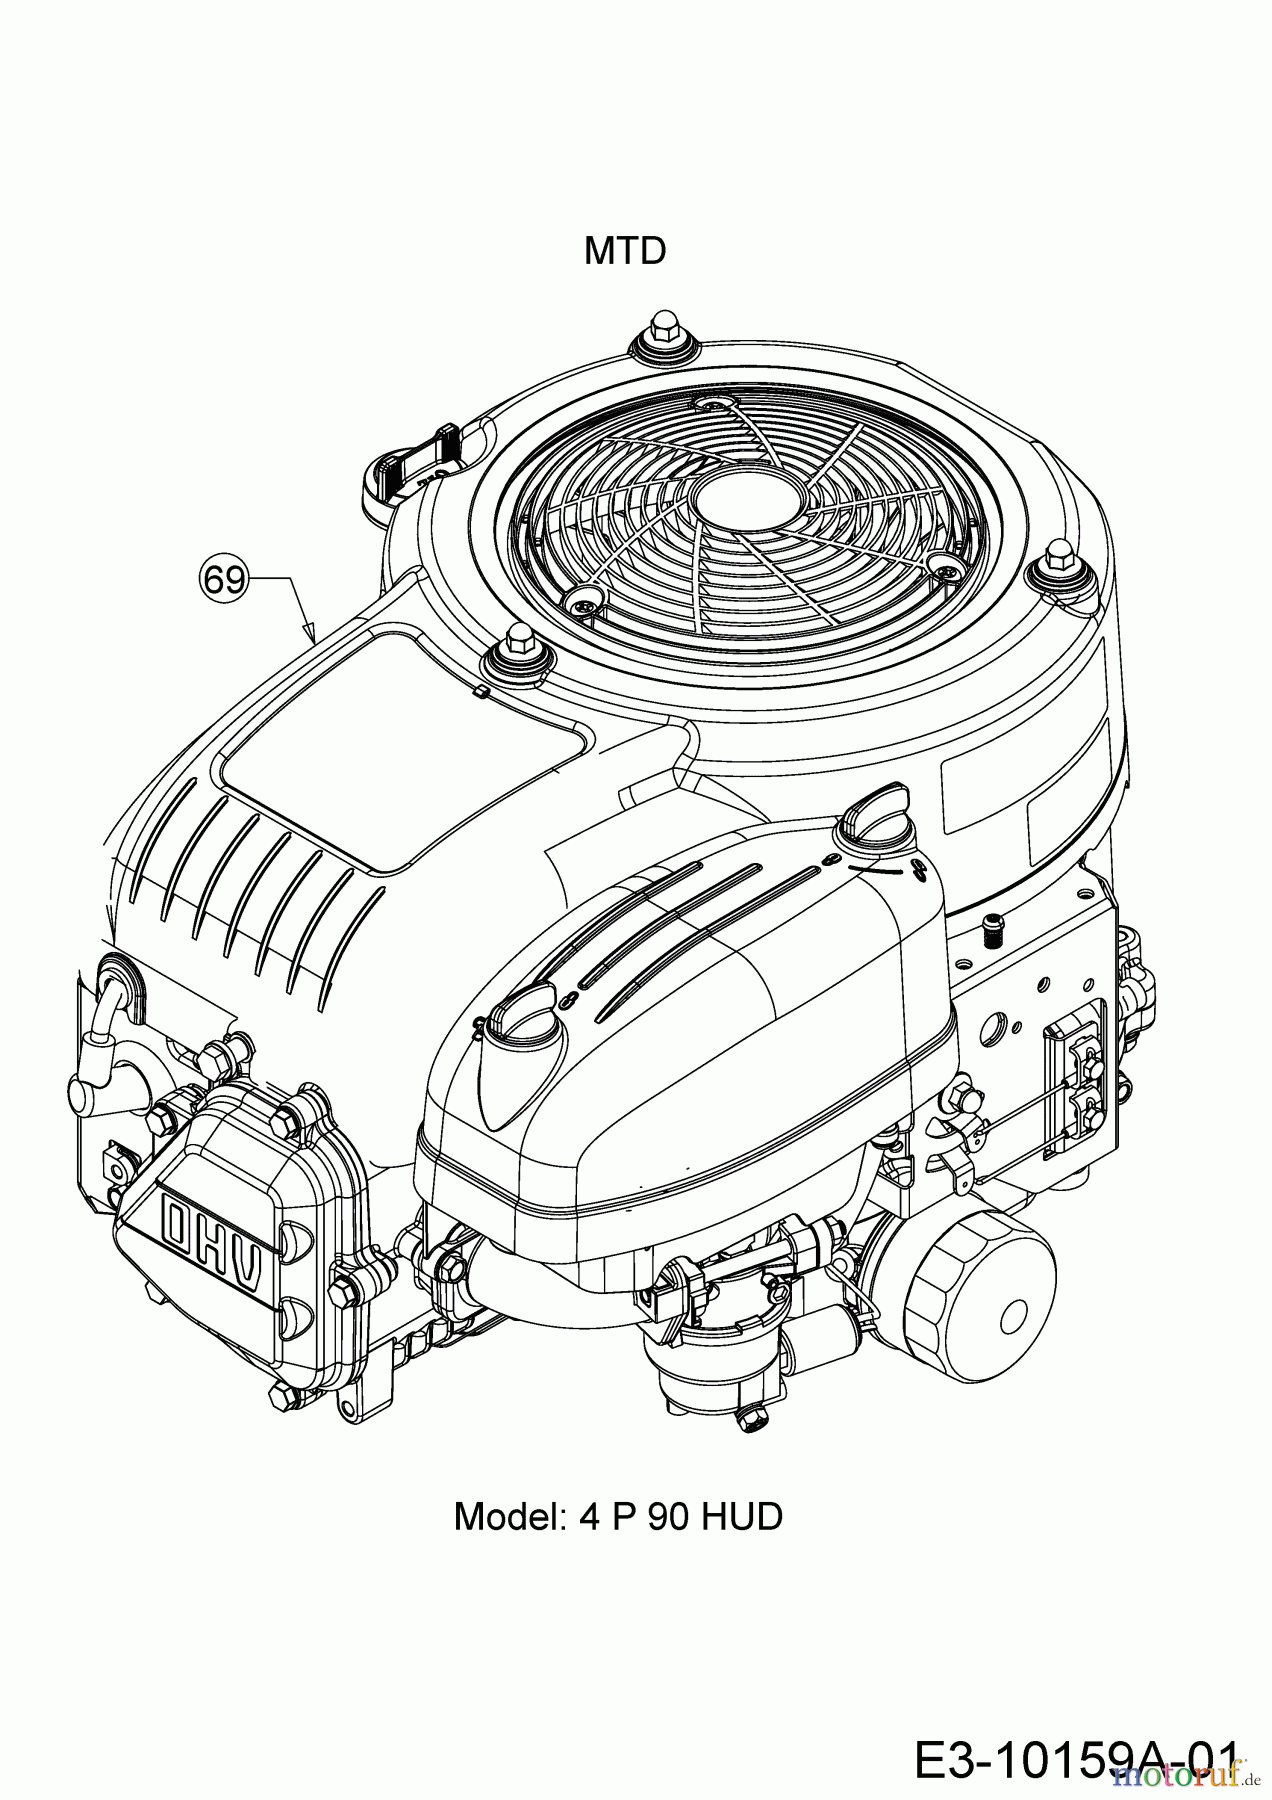  Helington Rasentraktoren H 96 T 13H276KF686  (2018) Motor MTD